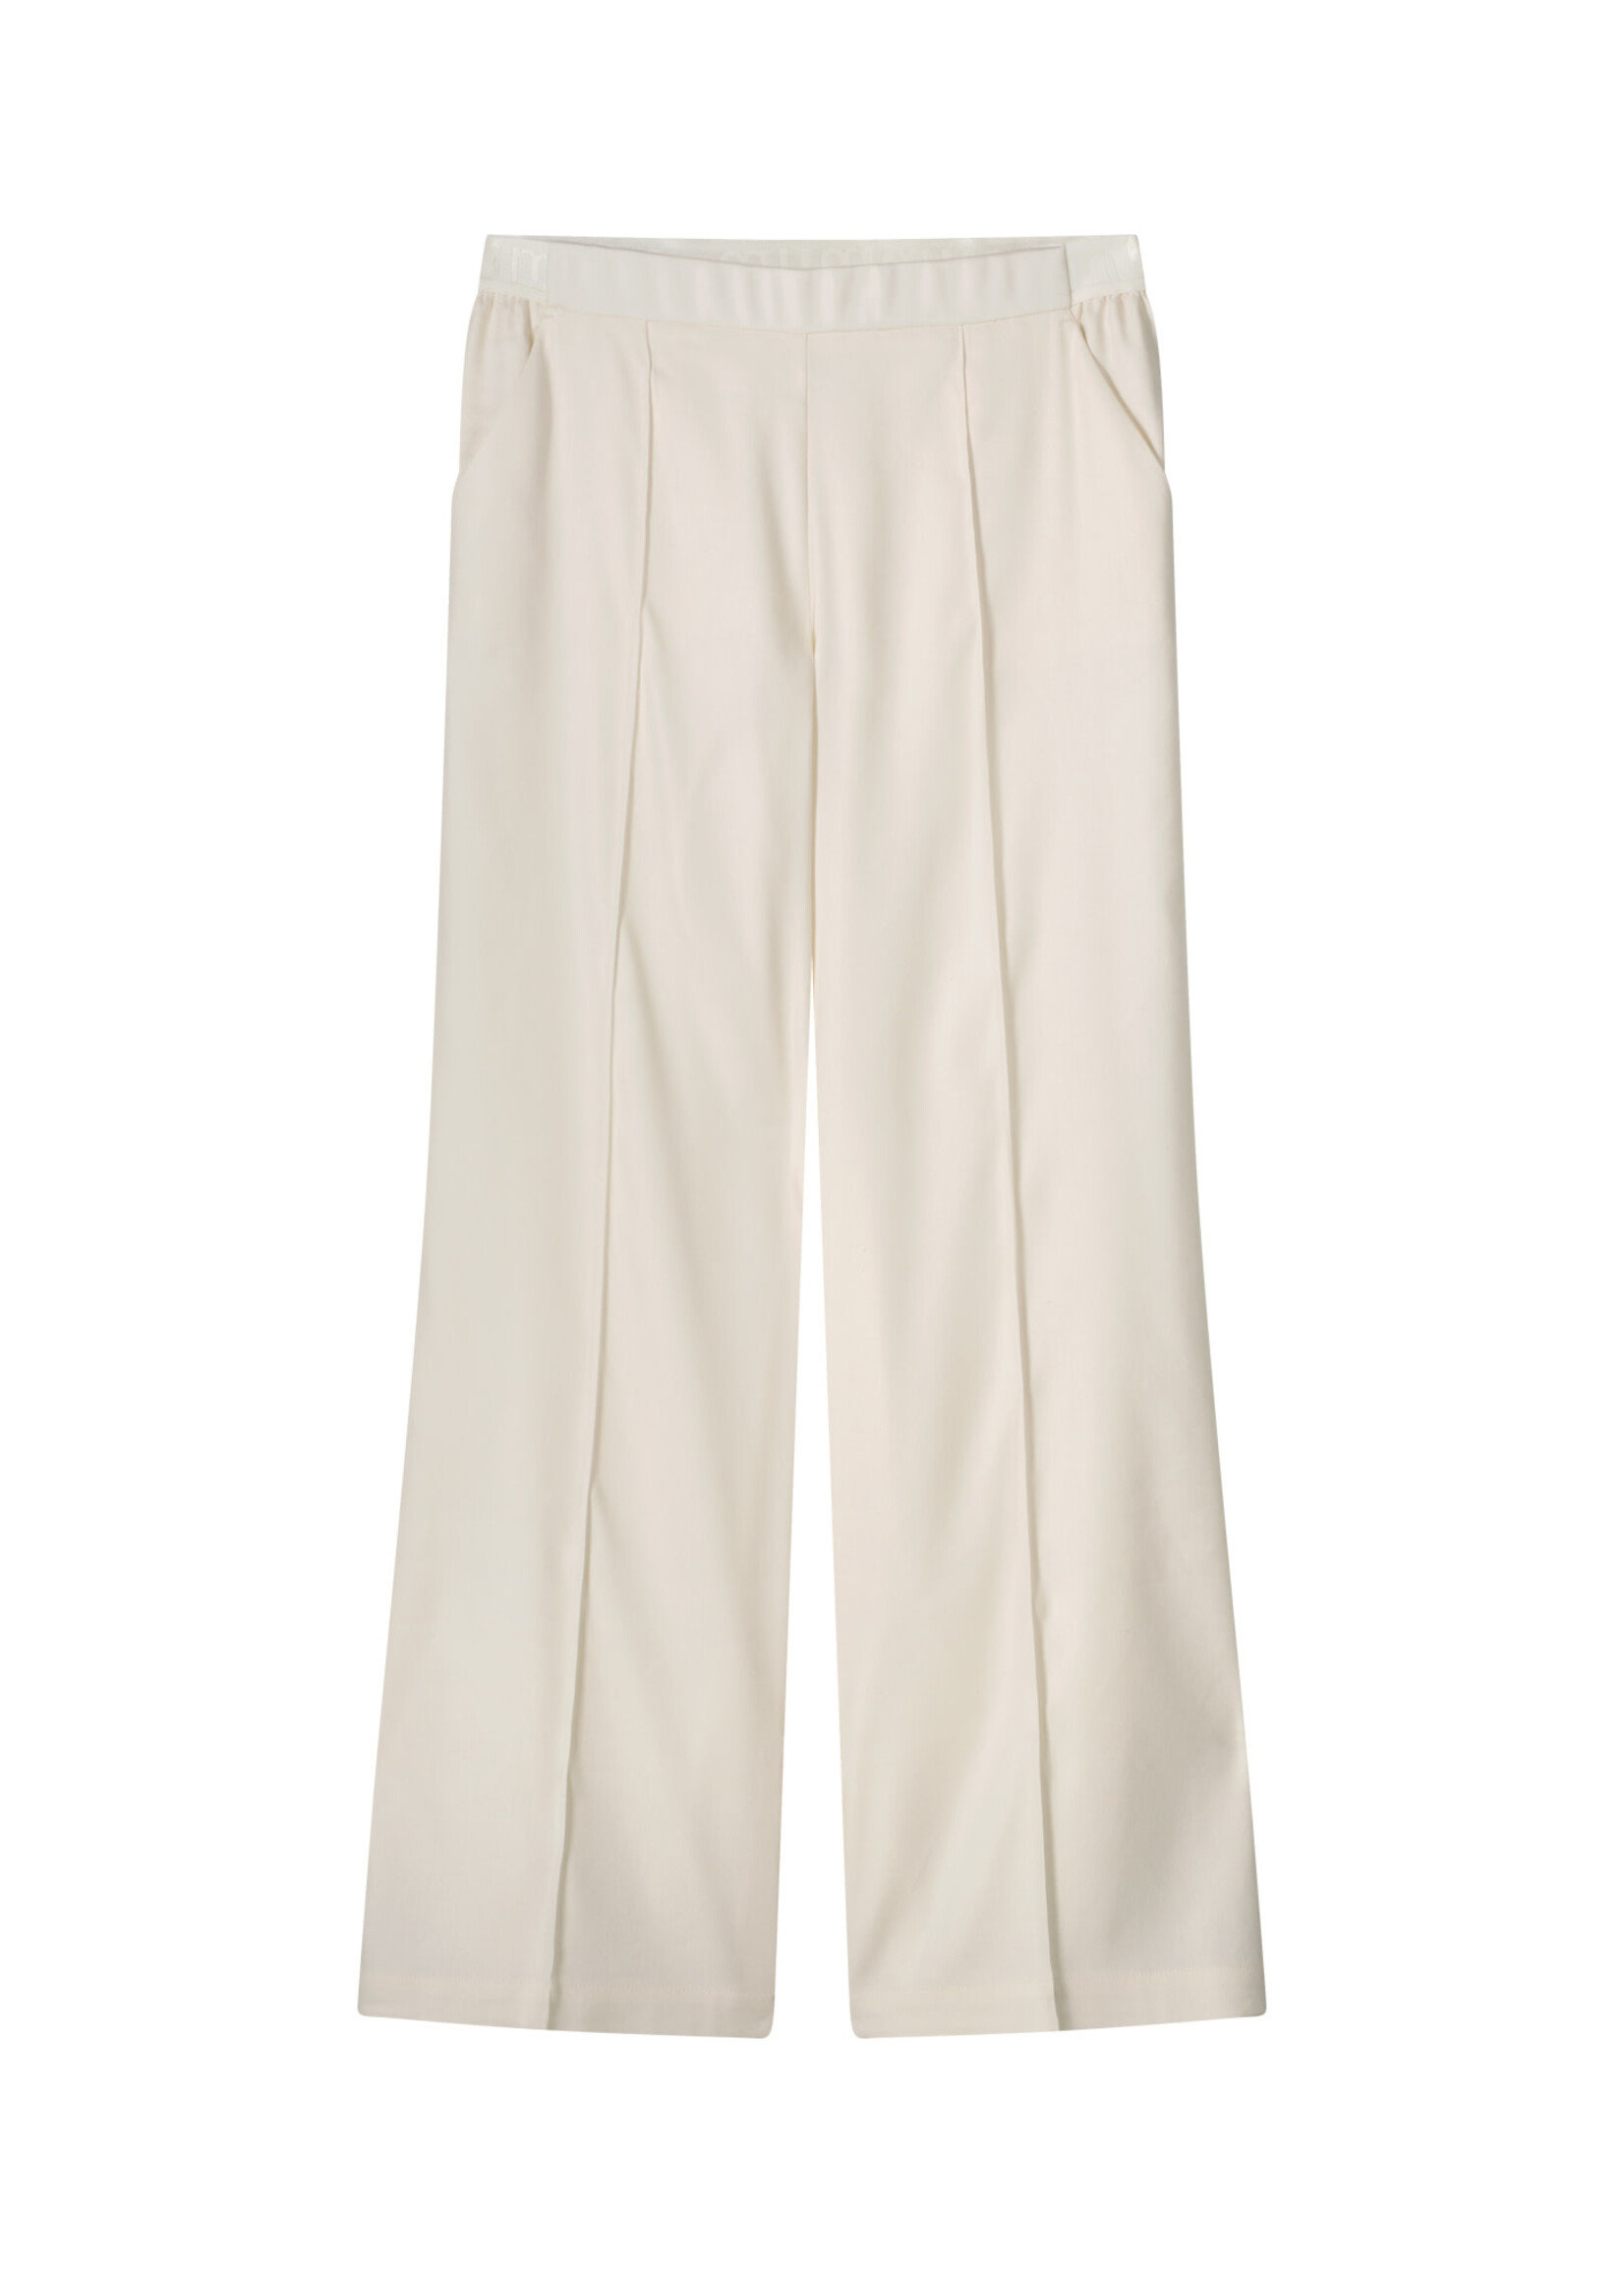 Summum Summum, Trousers linen blend, Ivory, Size: